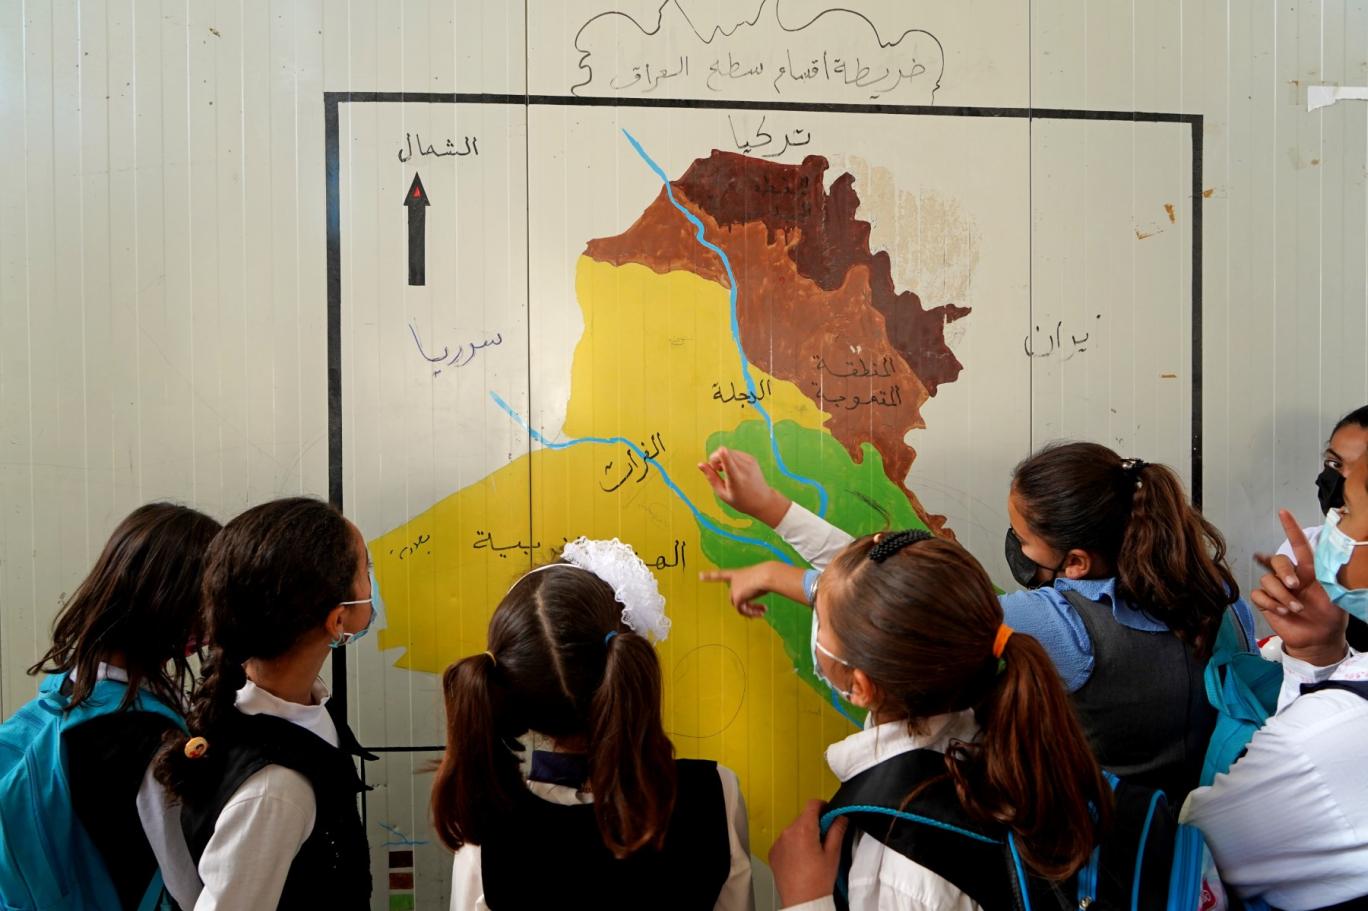 فتيات ينظرن إلى خريطة العراق في إقليم كردستان العراق المتمتع بالحكم الذاتي (أ ف ب)